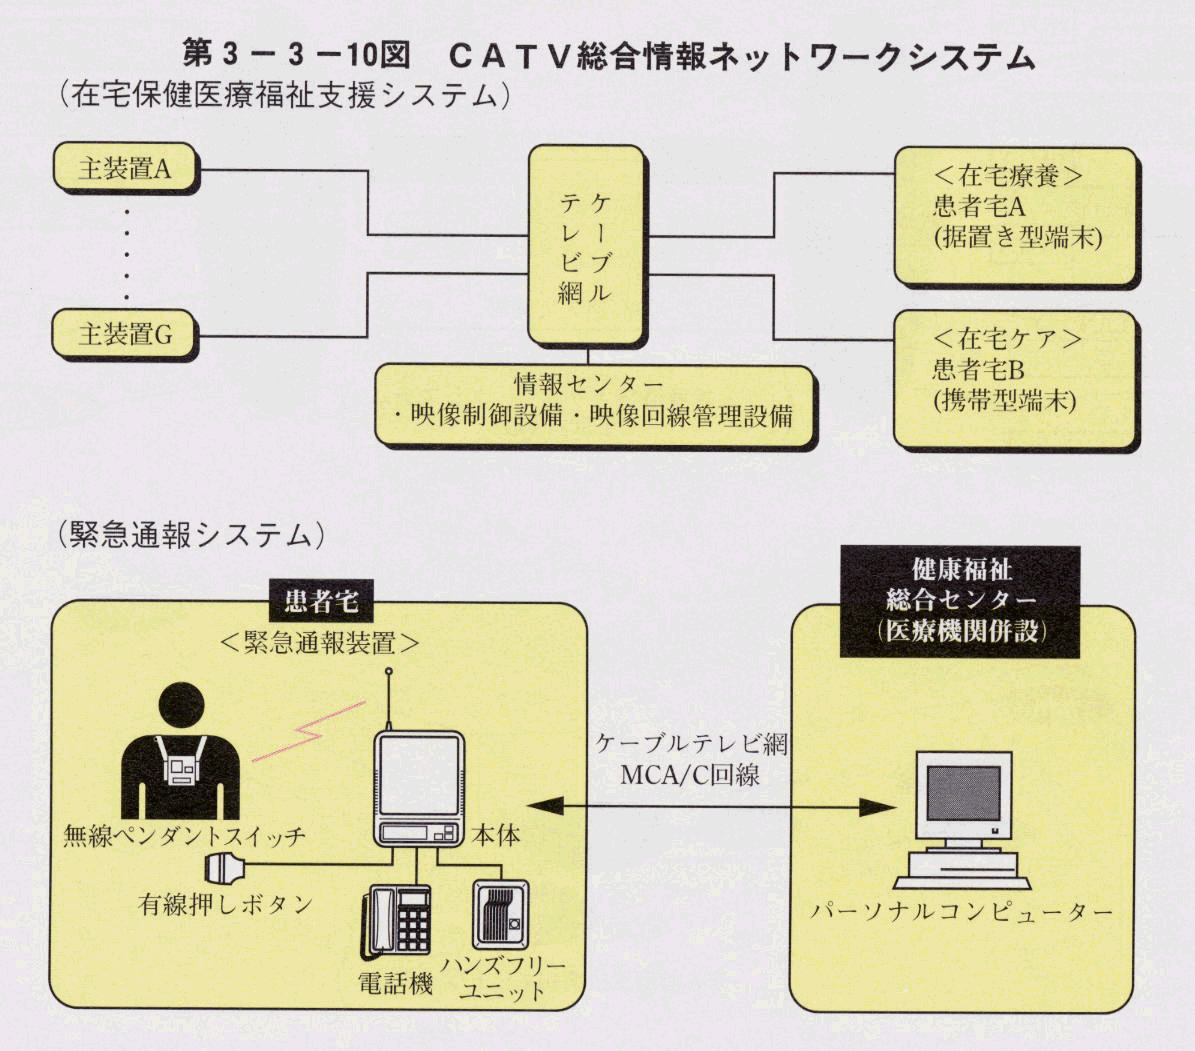 第3-3-10図 CATV総合情報ネットワークシステム(在宅保健医療福祉支援システム)